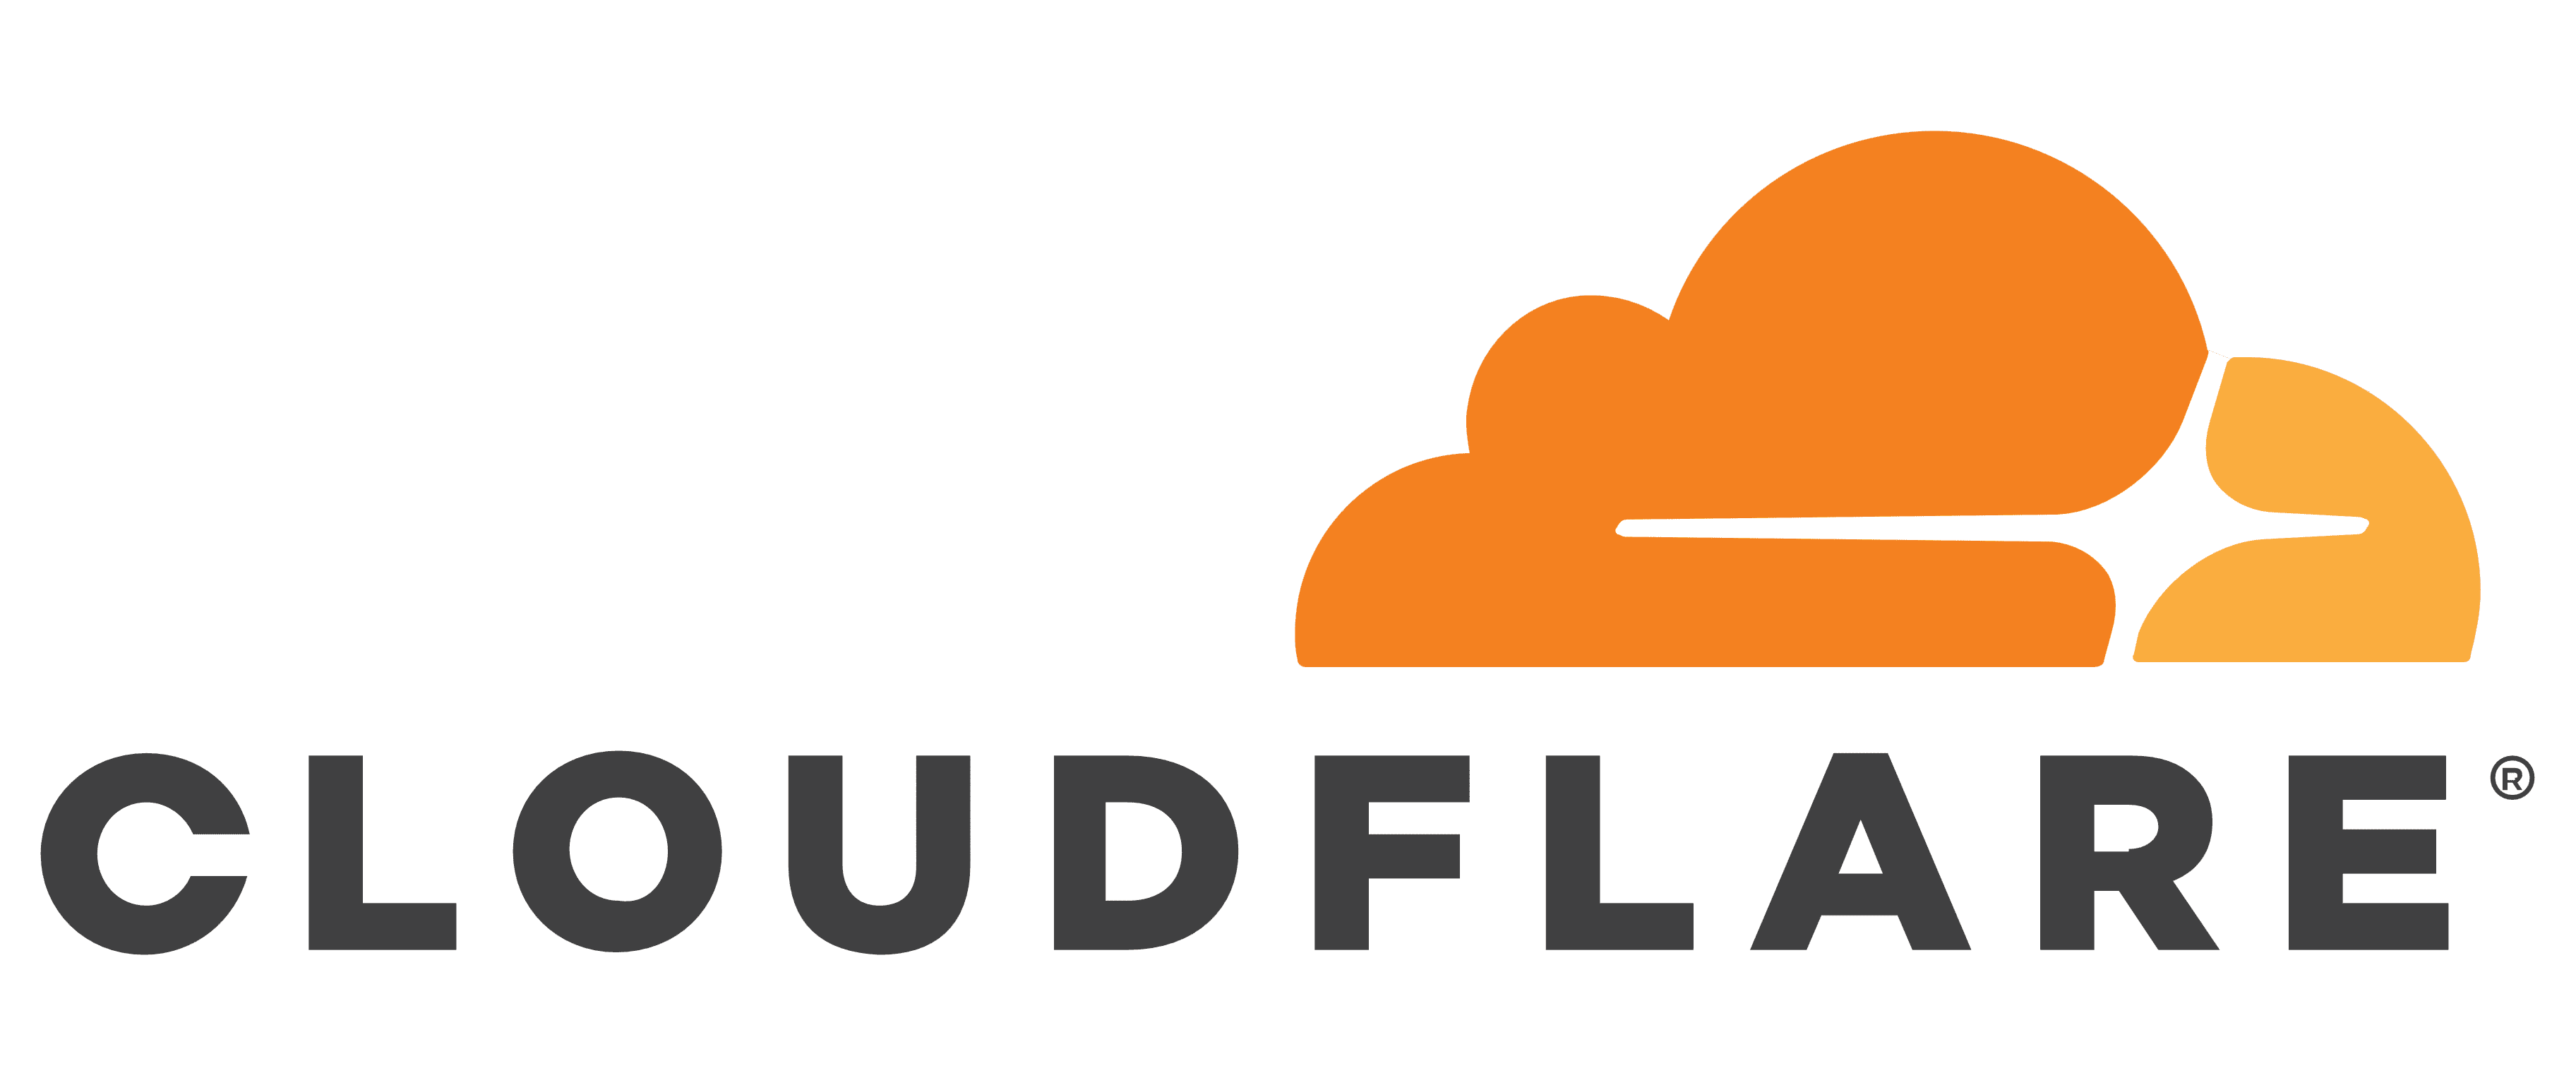 Cloudflare mit Cloudflare One schützen
